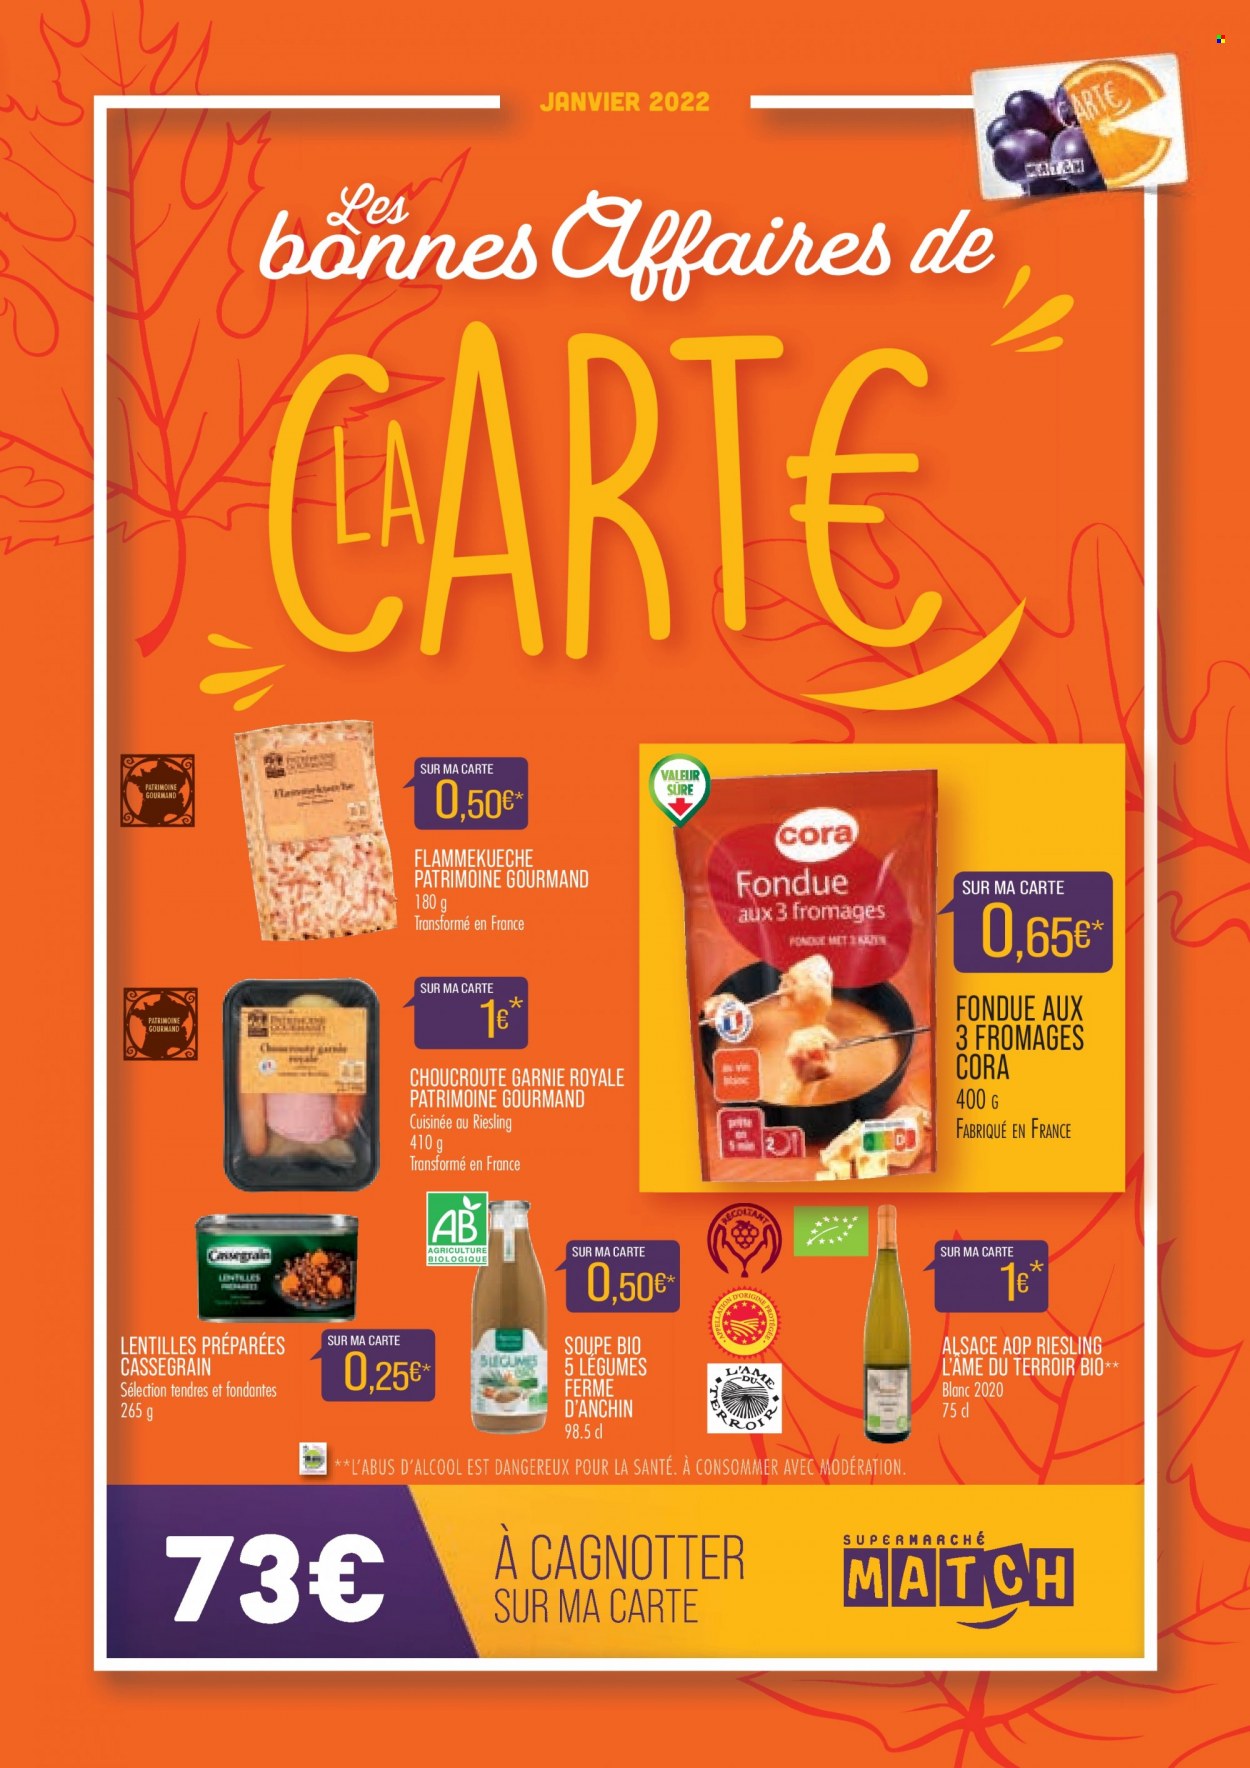 thumbnail - Catalogue Supermarché Match - 01/01/2022 - 31/01/2022 - Produits soldés - choucroute, soupe, lentilles, Flammekueche, lentilles préparées. Page 1.